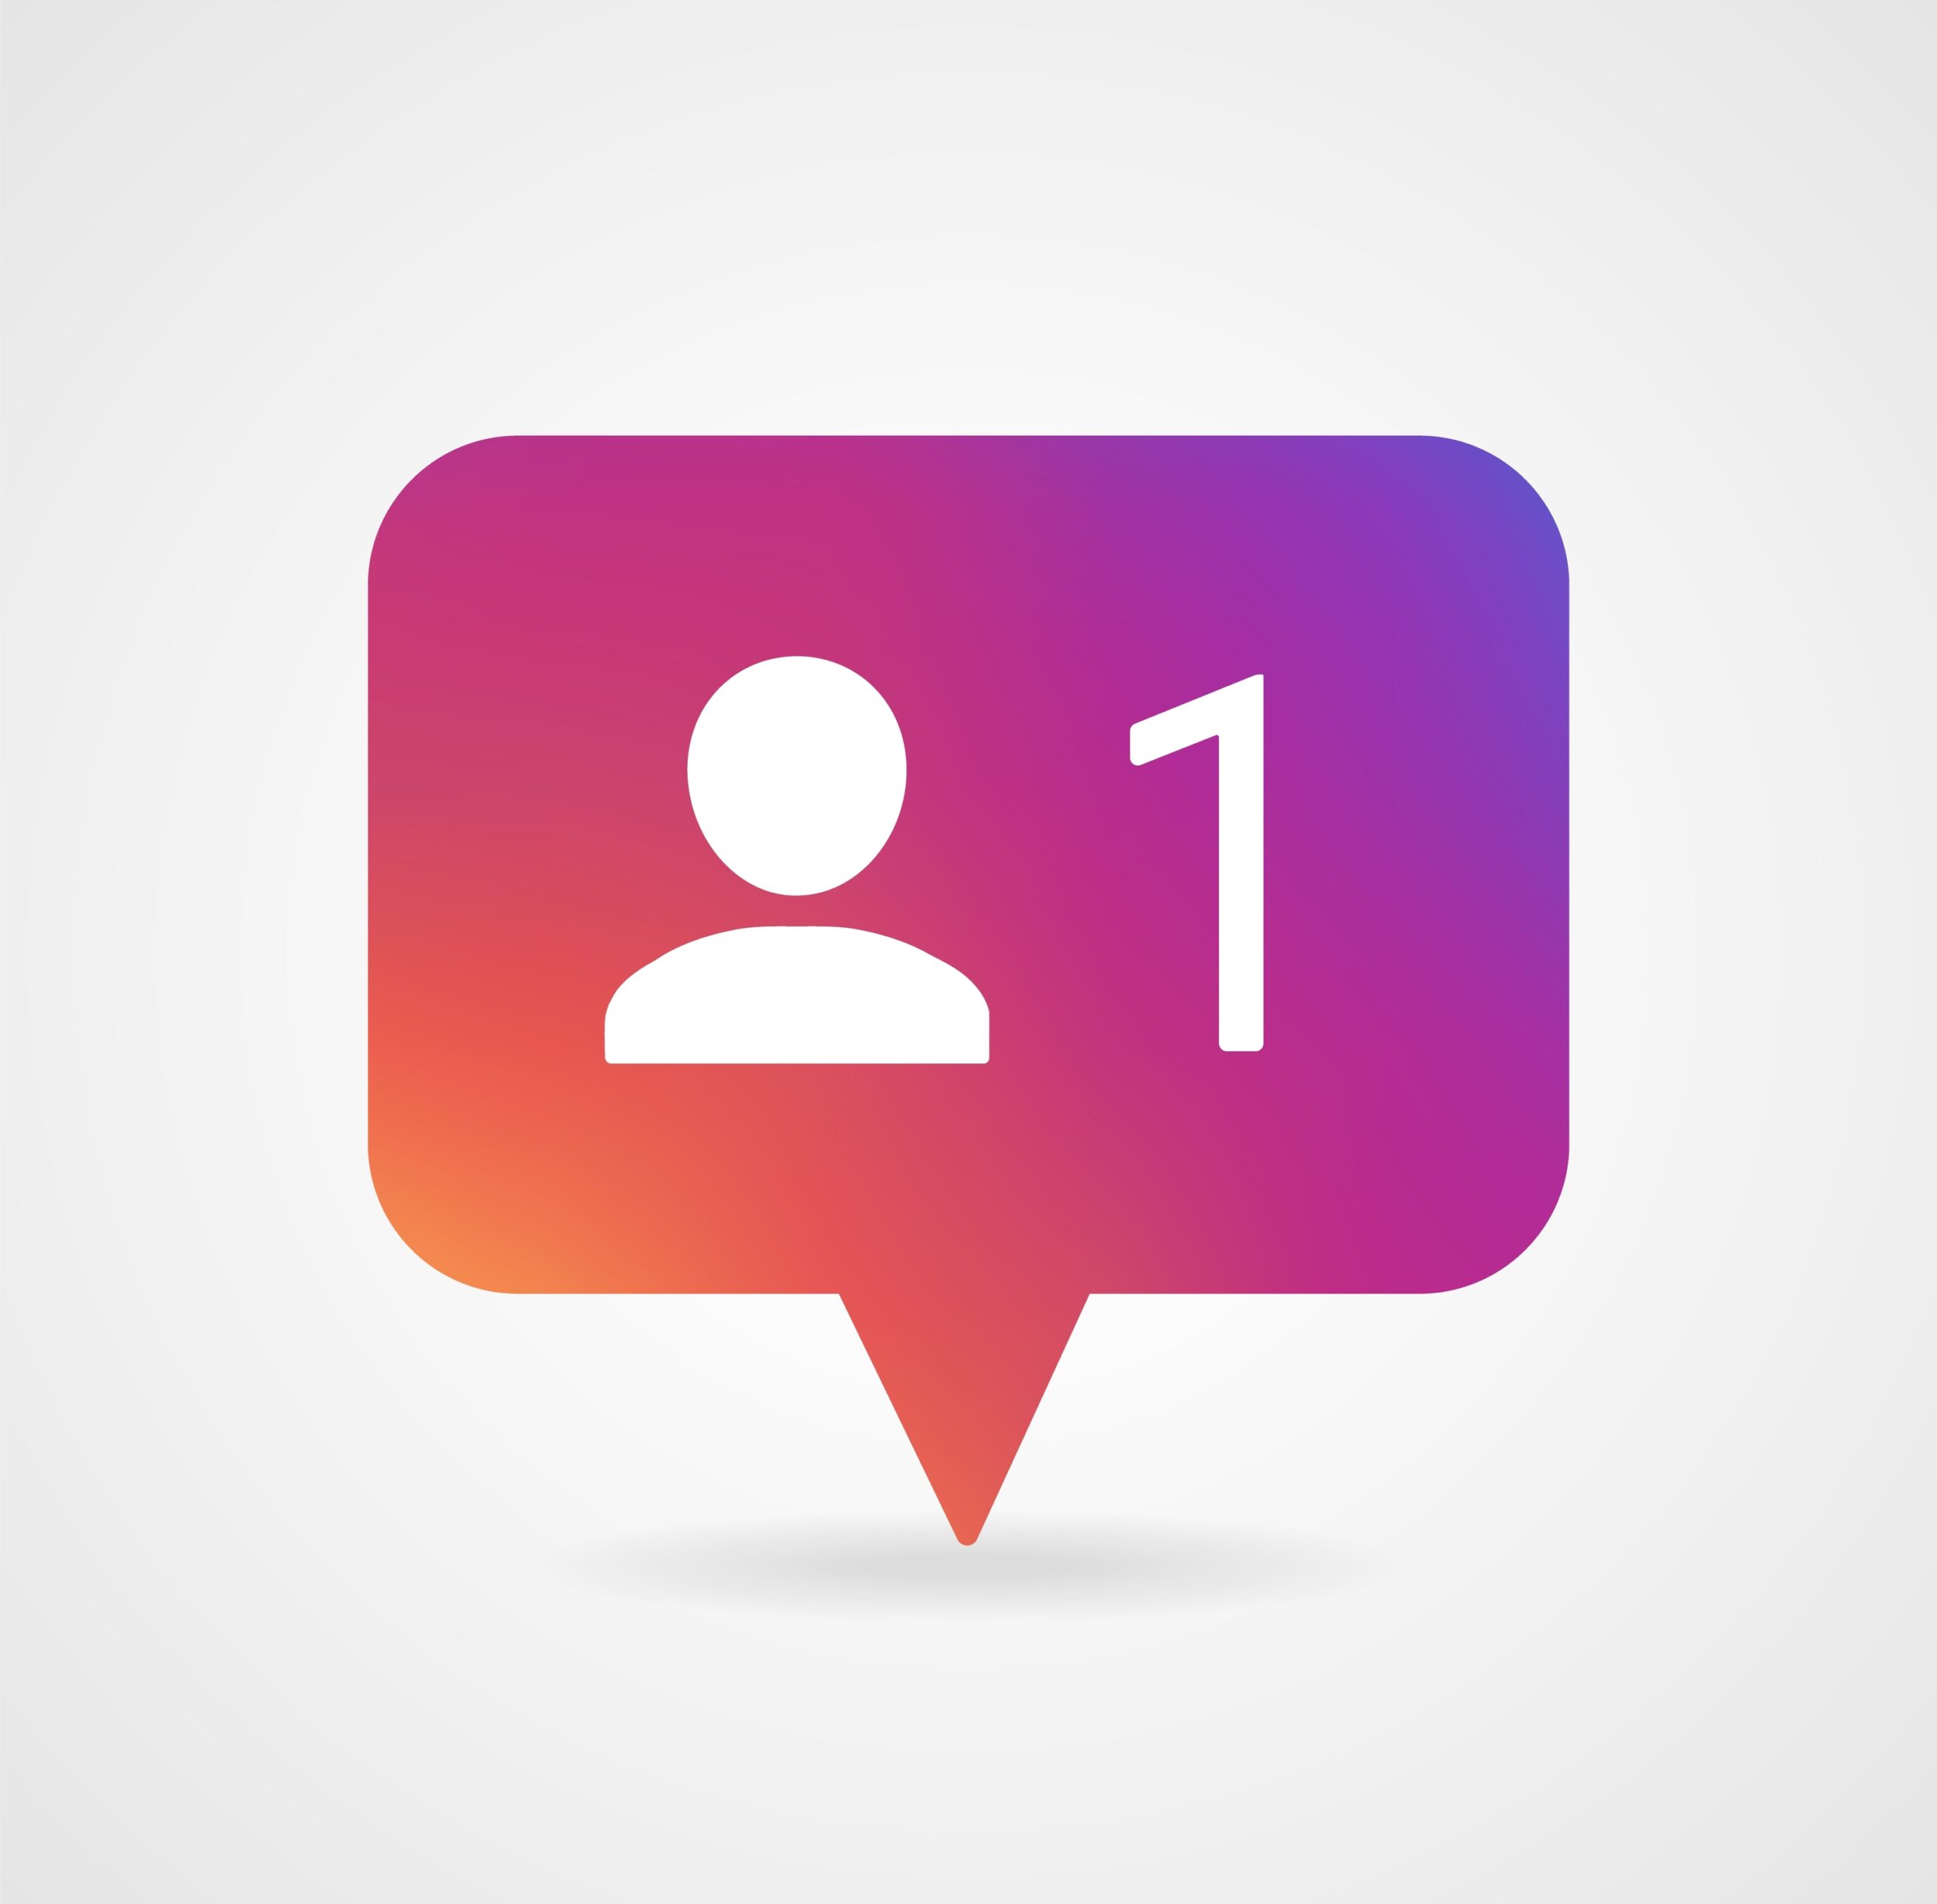 New Follower notification. Social media icon User button, sign, symbol, logo. Instagram user. Insta follower. Instagram stories user image Vector illustration EPS 10.